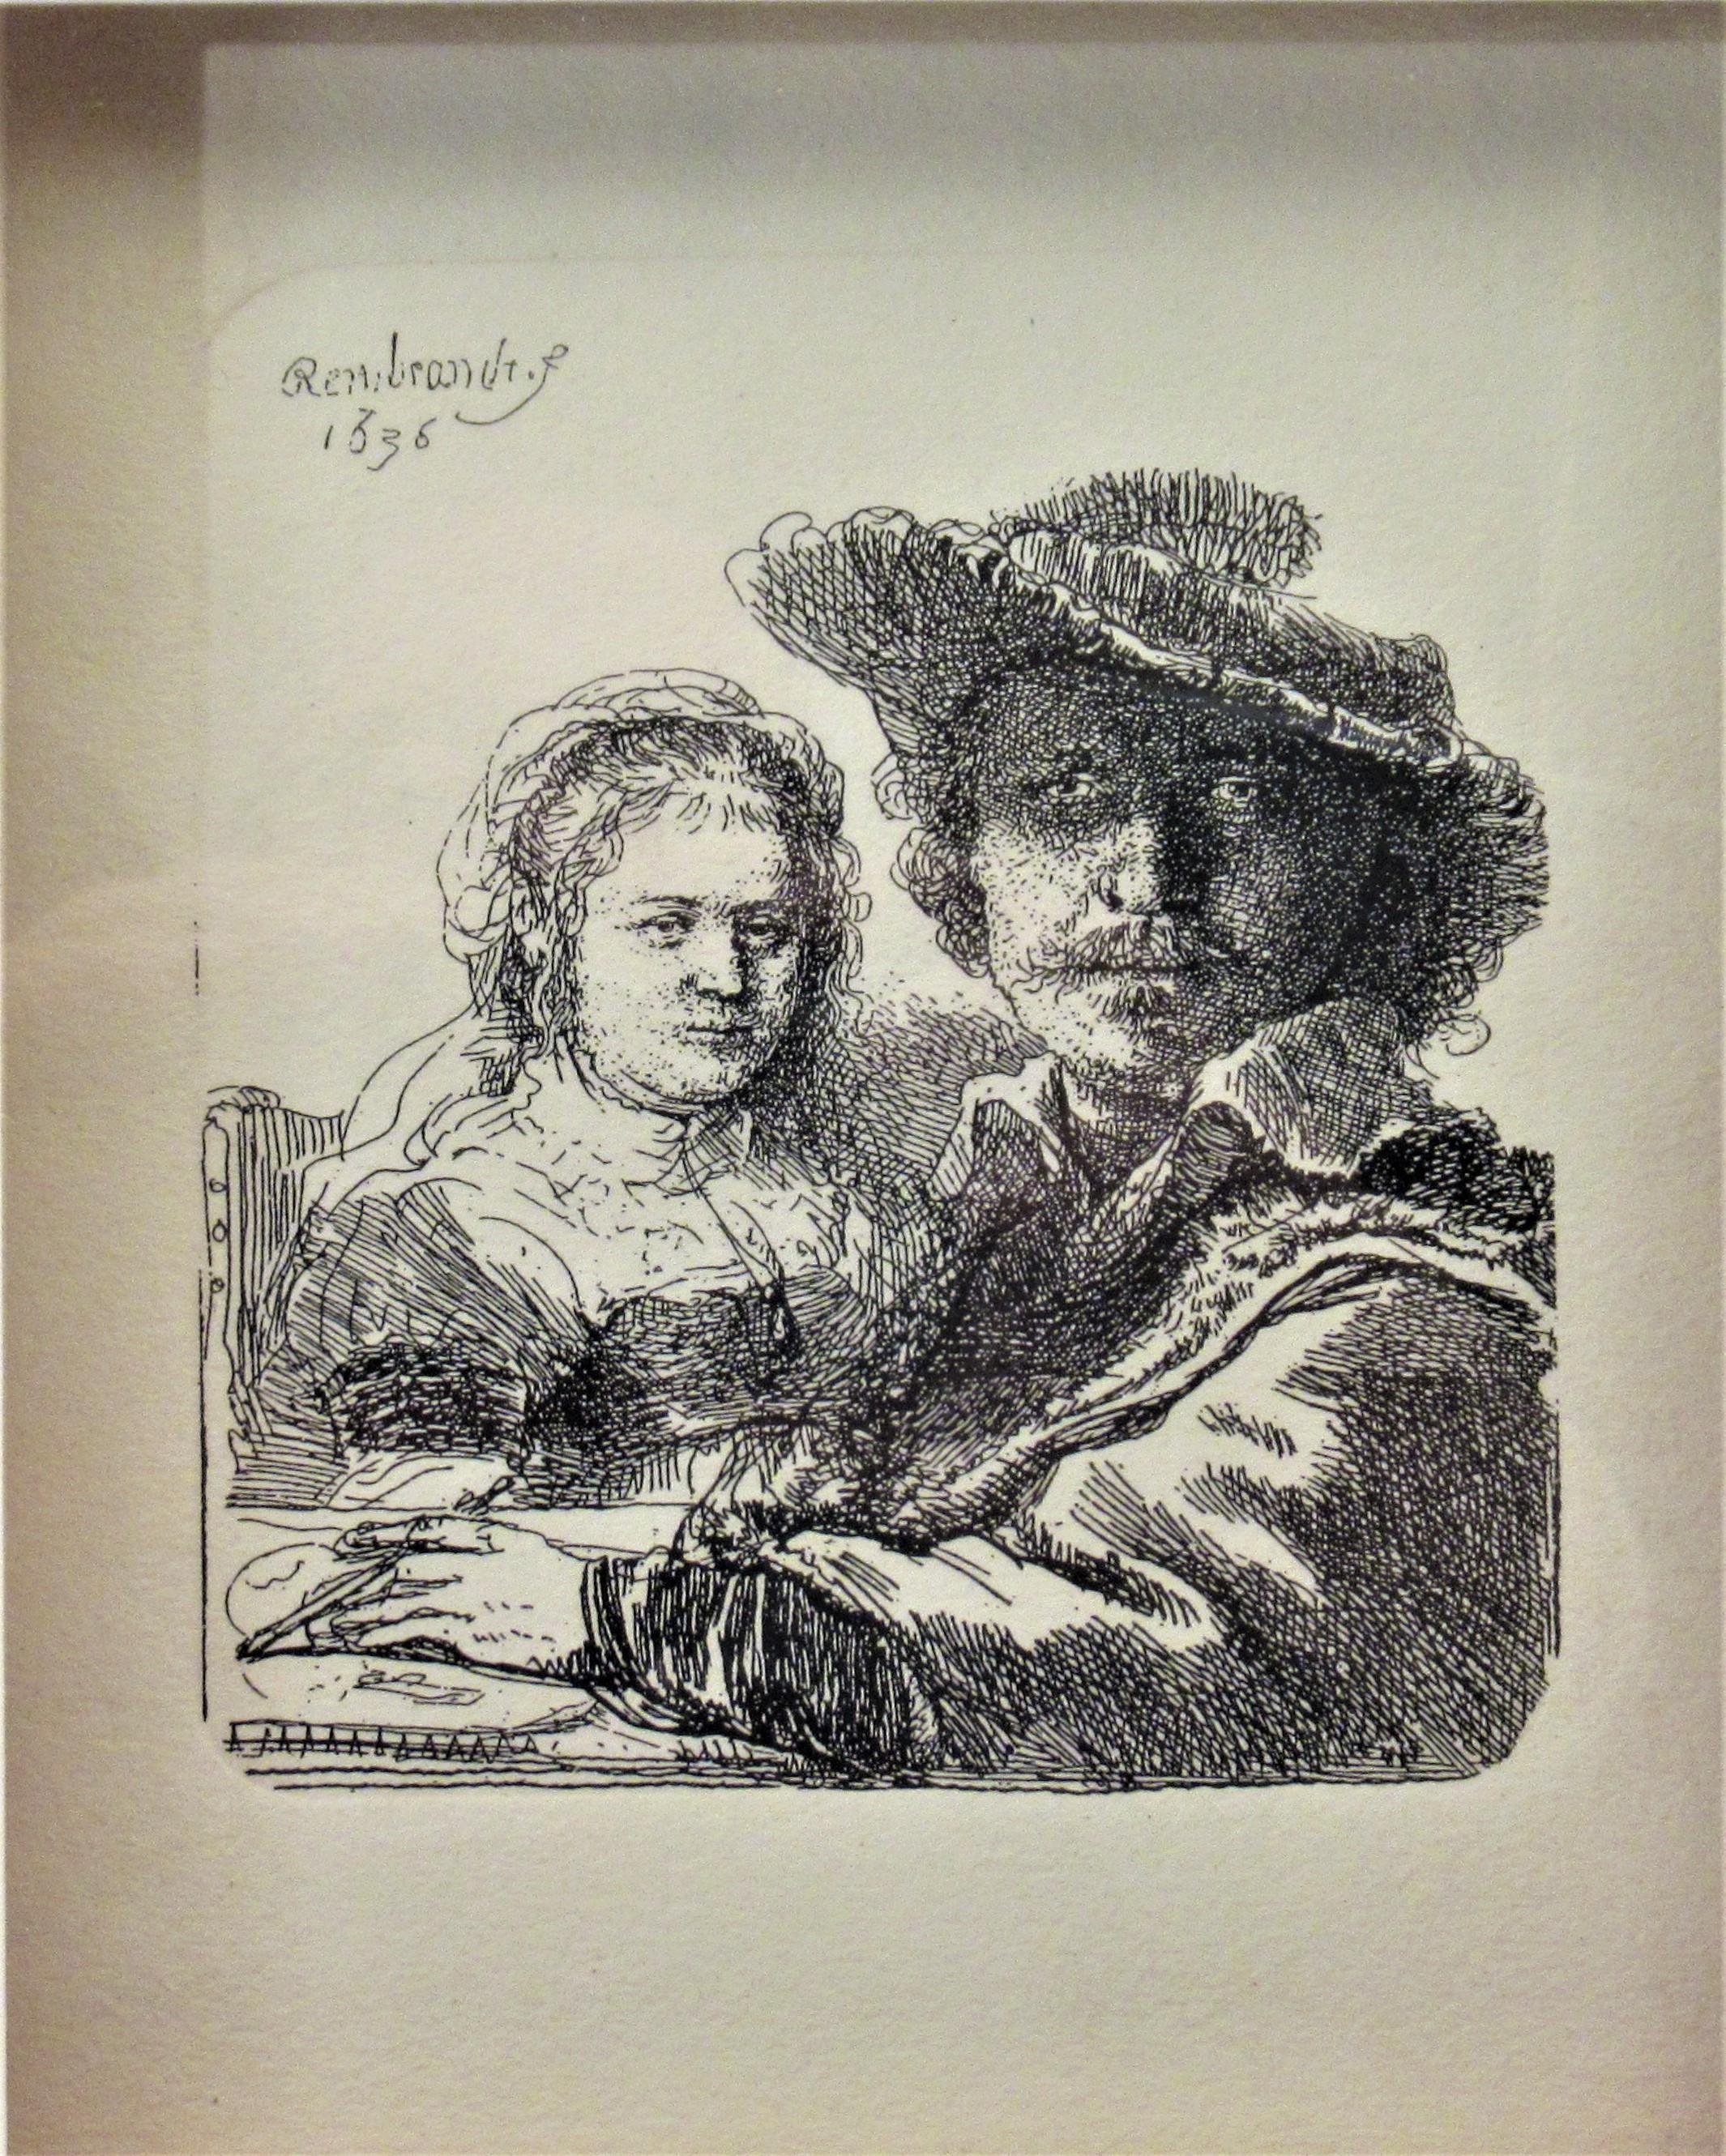 Rembrandt with his Wife Saskia - Print by Rembrandt van Rijn